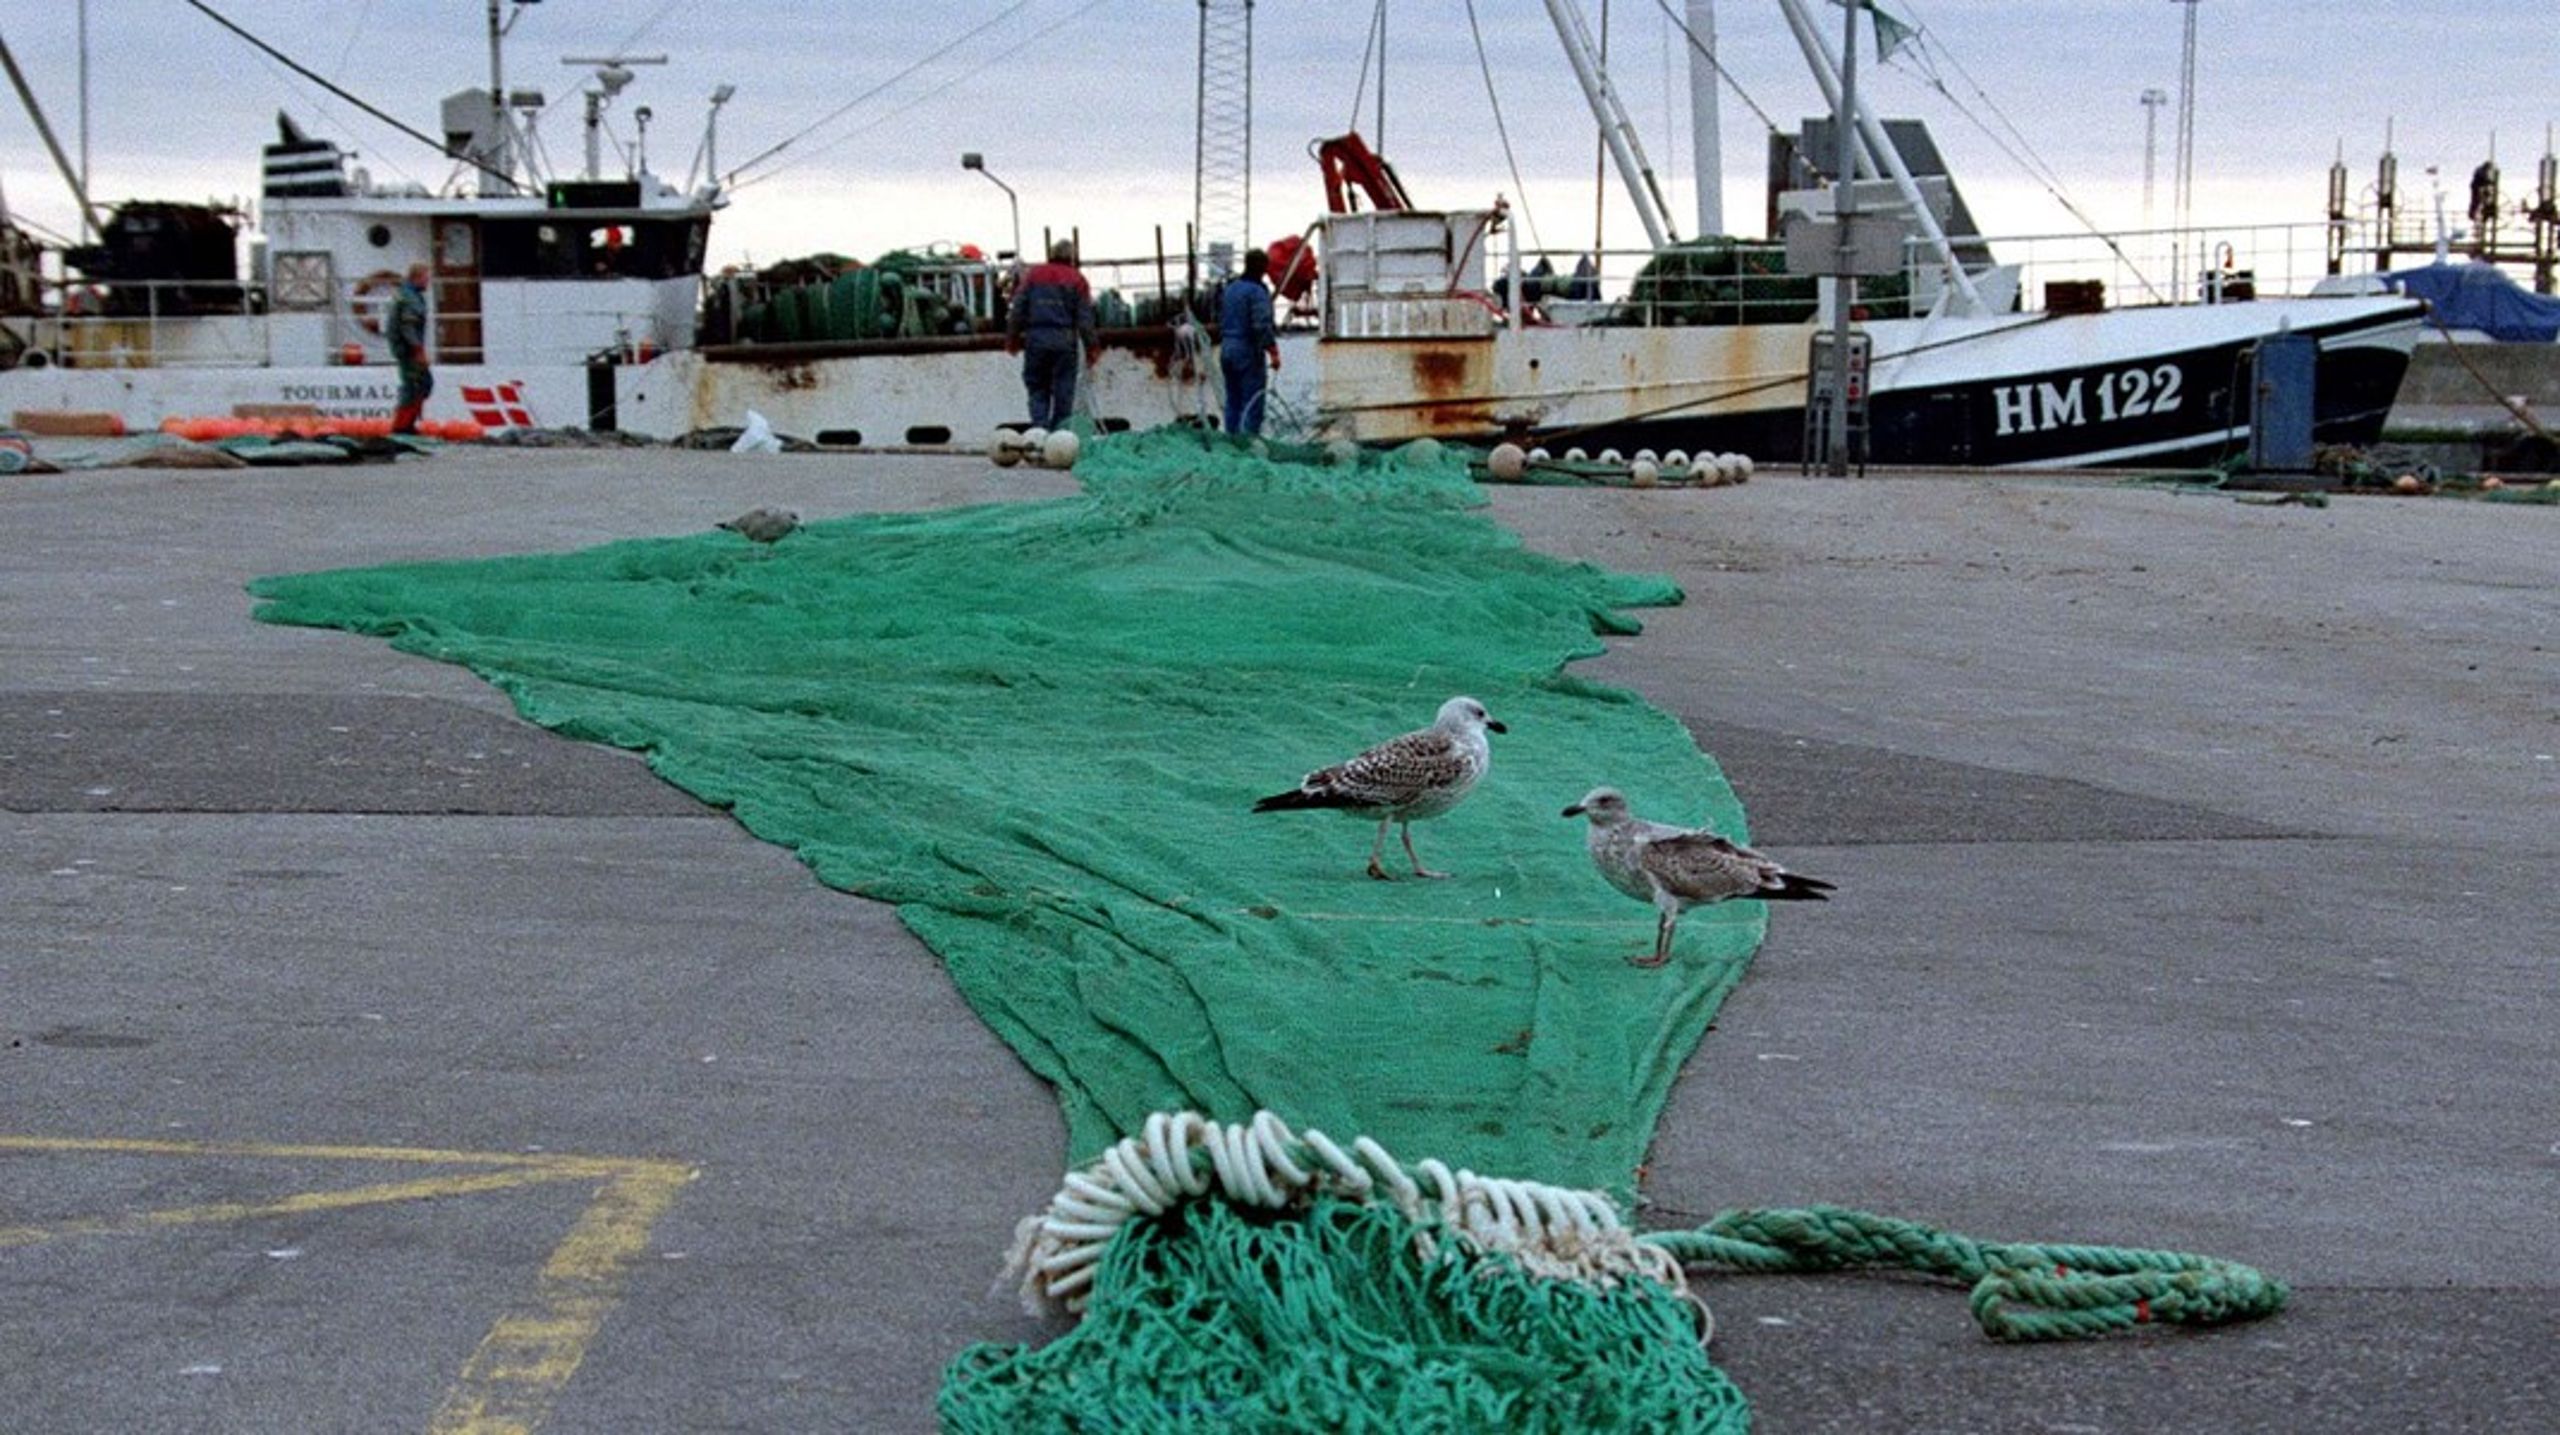 Det skal være slut med fiskeriets fornægtelser om bundtrawlets skadelige virkninger på havnaturen, skriver Søren Egge Rasmussen (Ø).